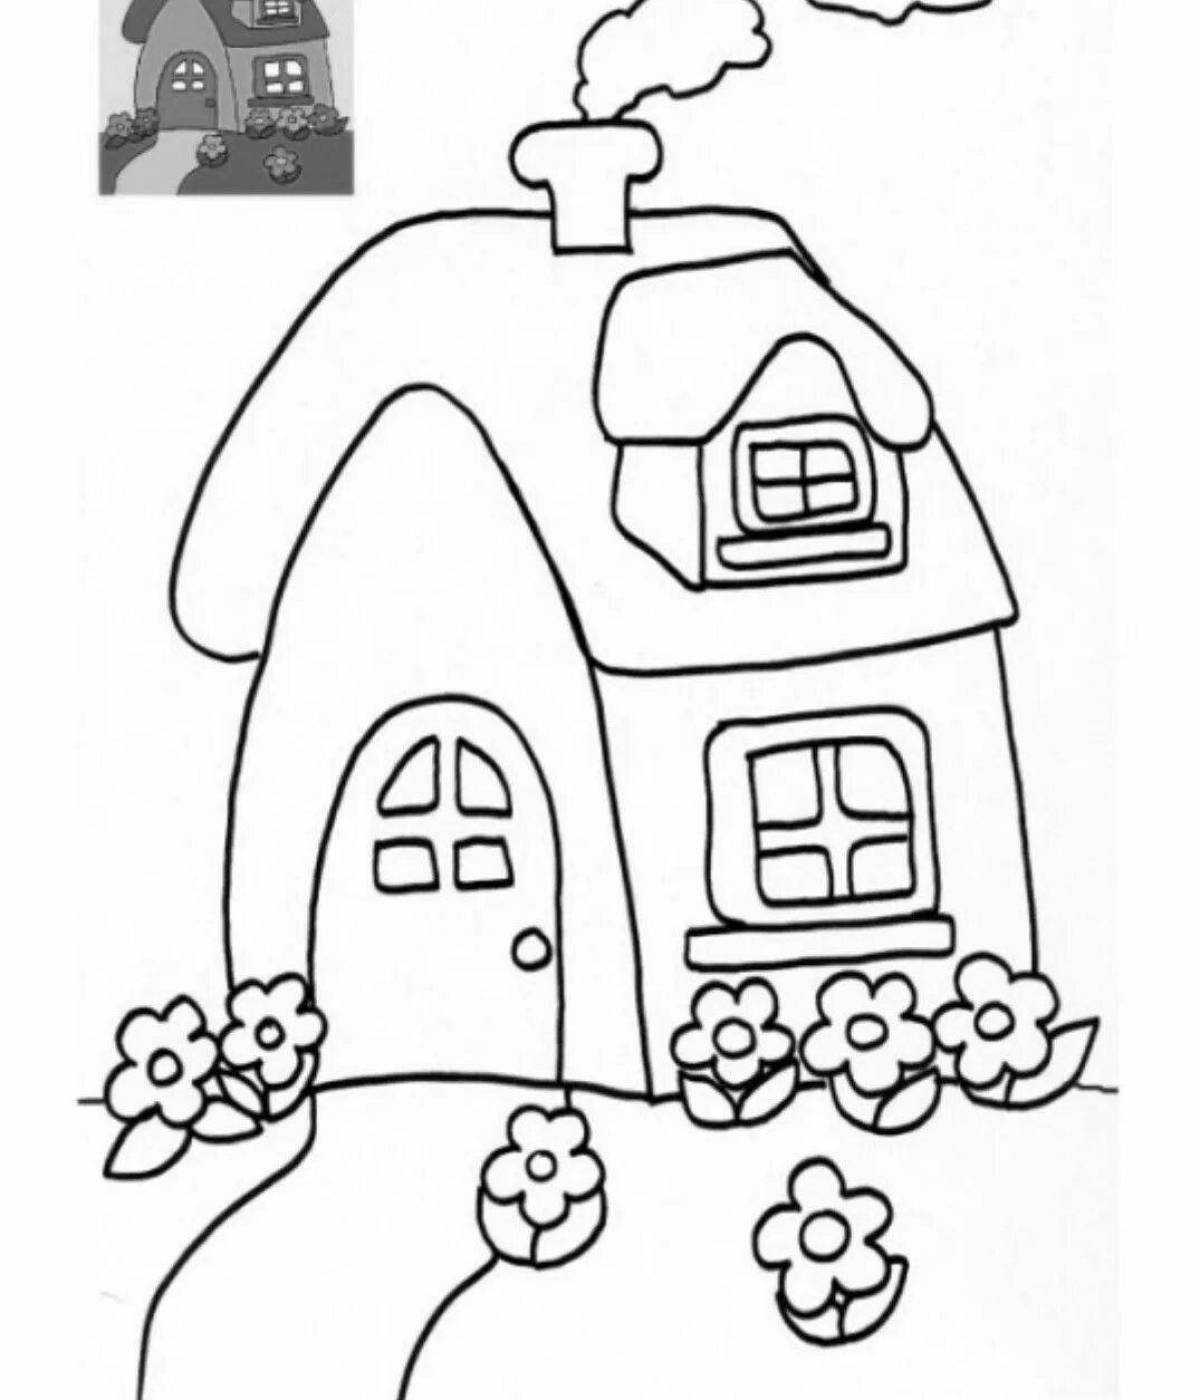 Раскраска чудесный дом для детей 4-5 лет